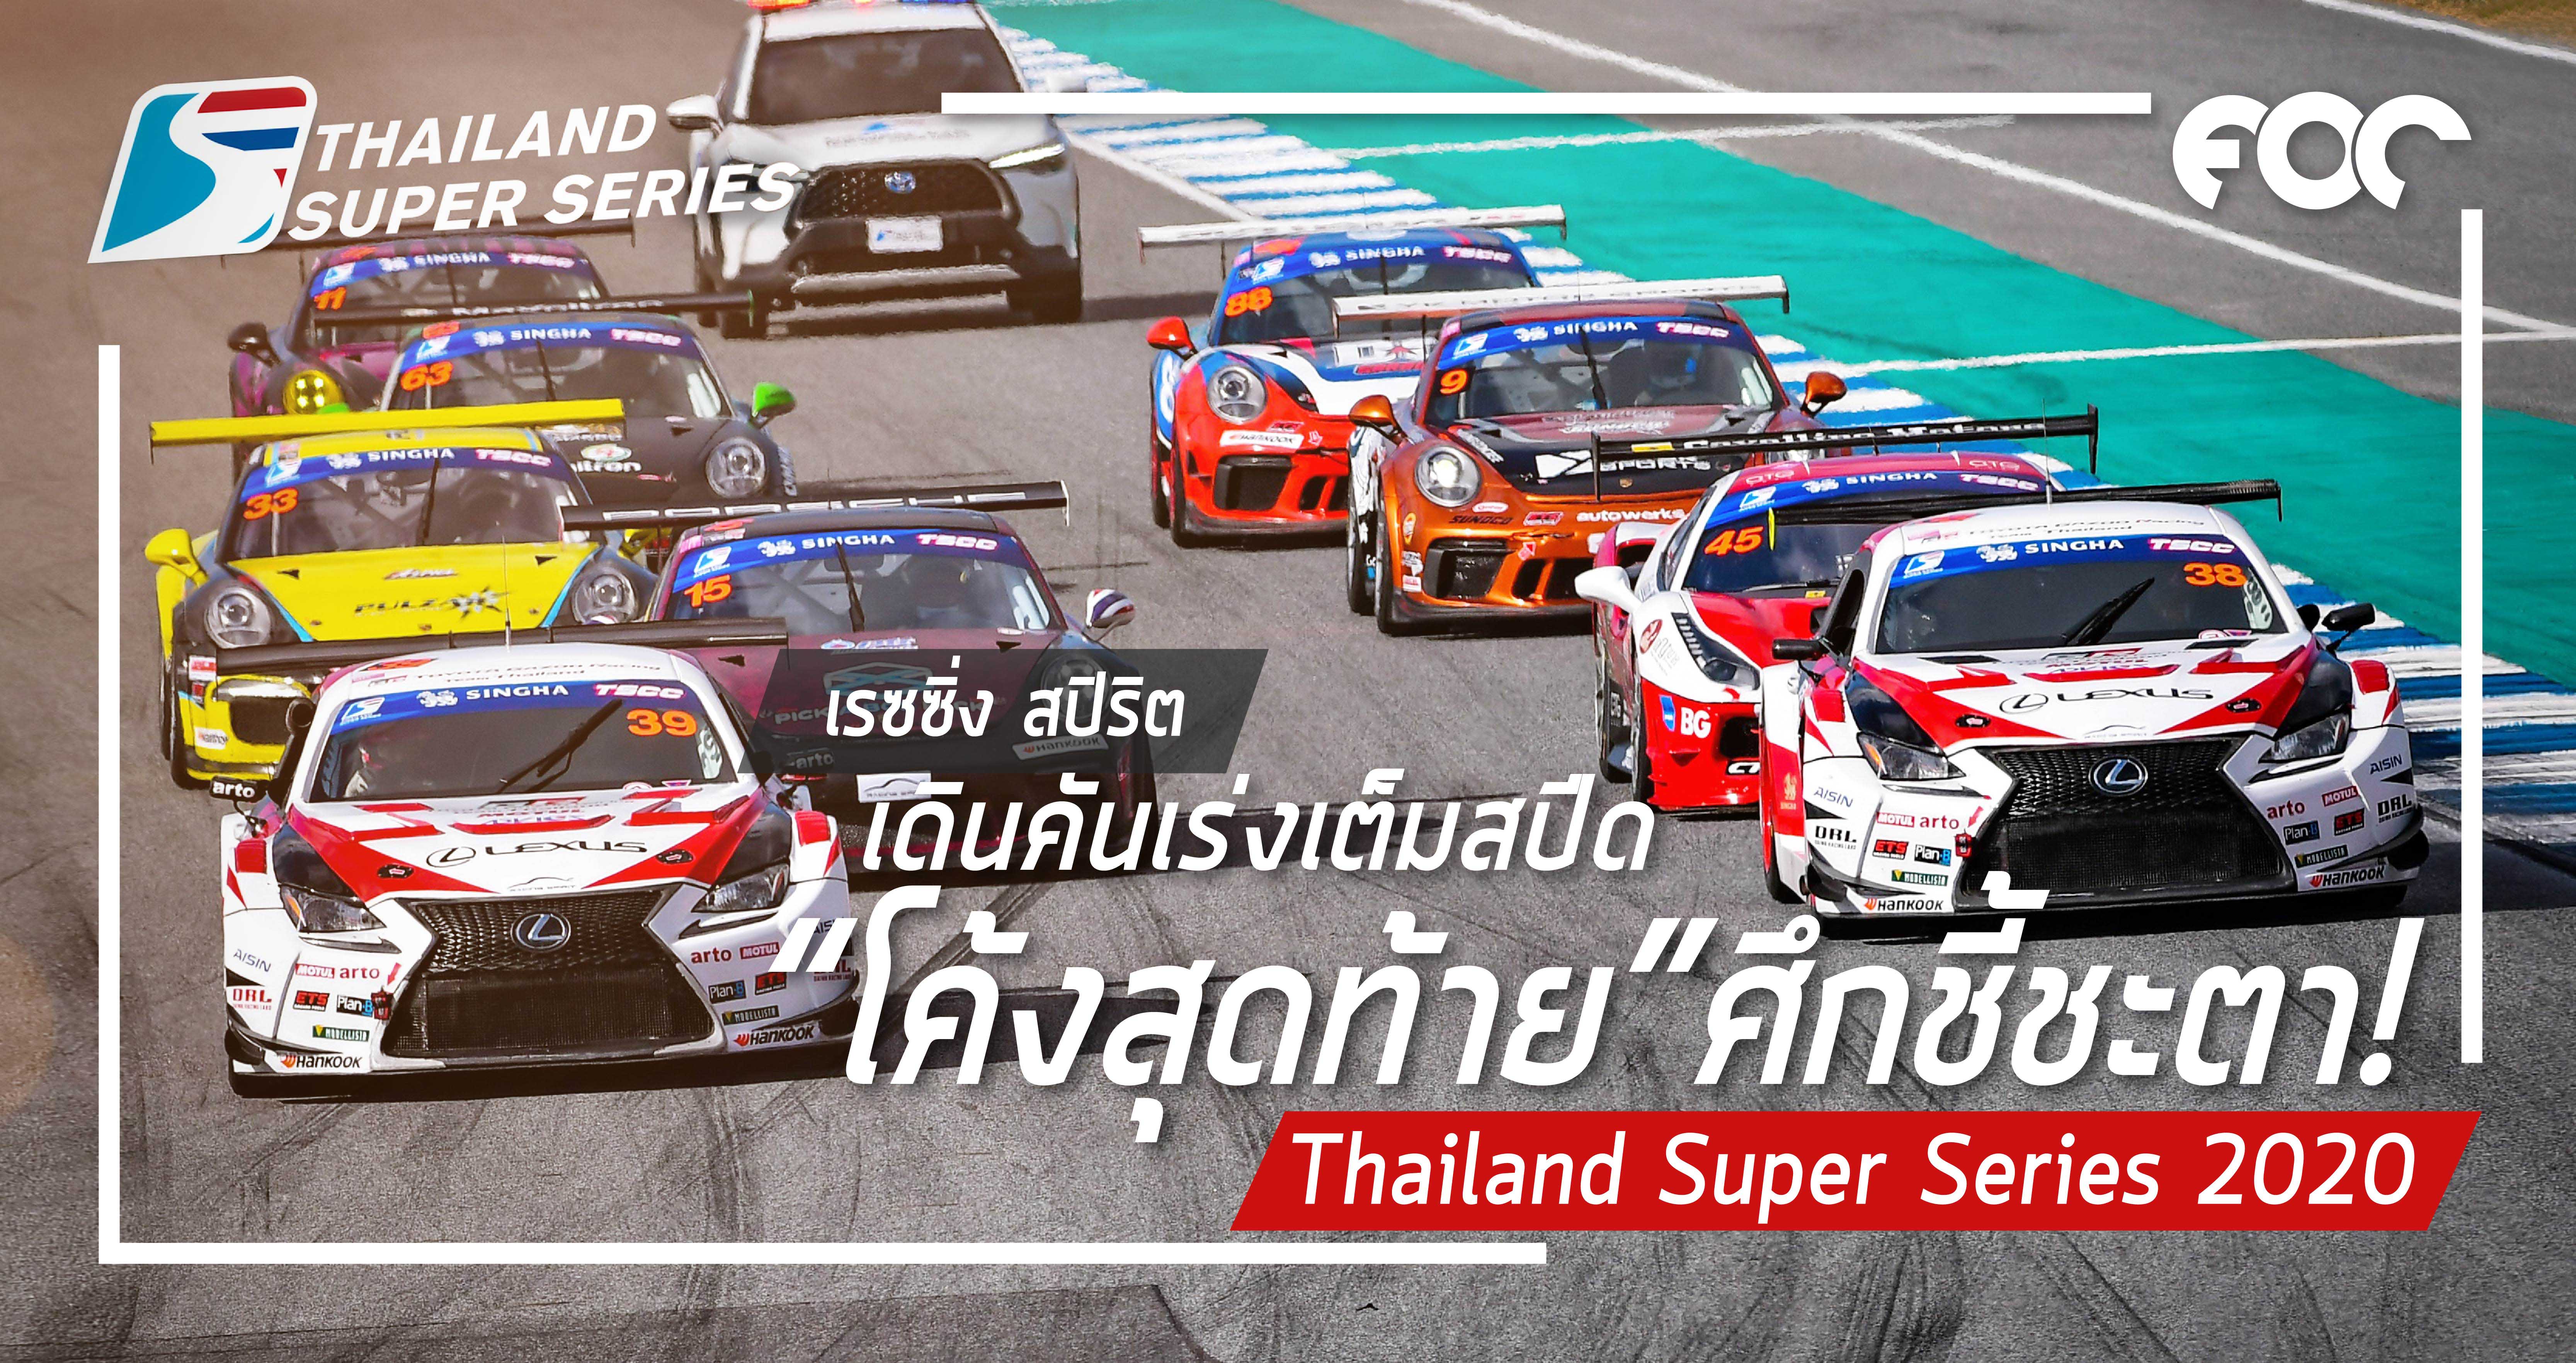 เรซซิ่ง สปิริต เดินคันเร่งเต็มสปีดสู่ “โค้งสุดท้าย” ศึกชี้ชะตา Thailand Super Series 2020 … เกมส์เดือดบนเวทีตัดสินแชมป์ฤดูกาล